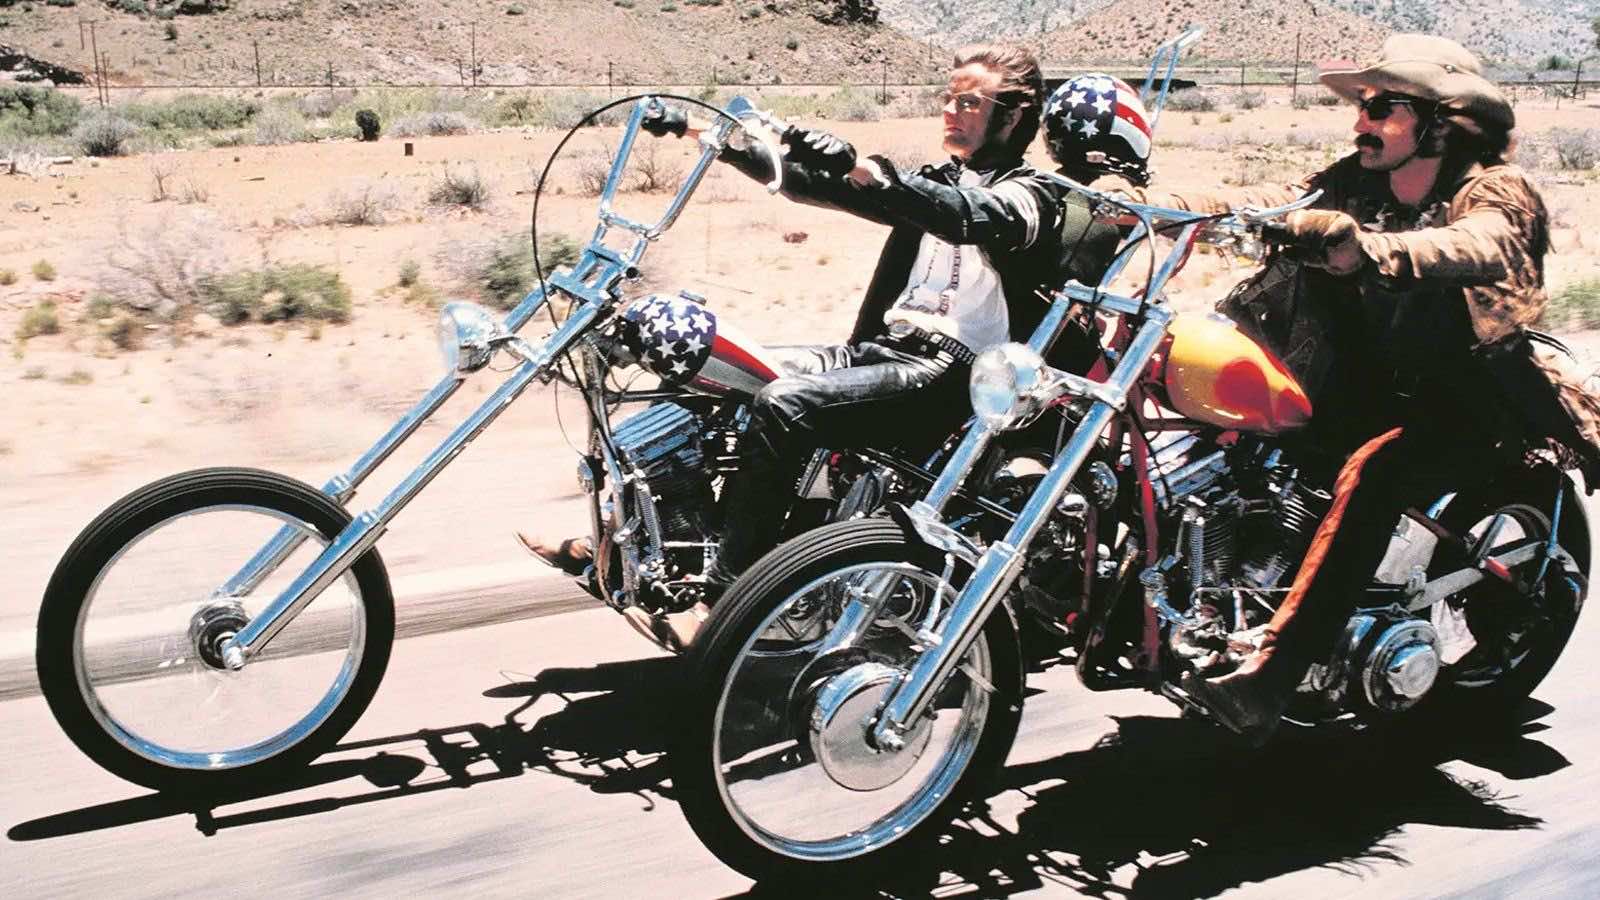 Φωτογραφία πλάνου από την ταινία Easy Rider με δύο μοτοσυκλετιστές και τις μηχανές τους